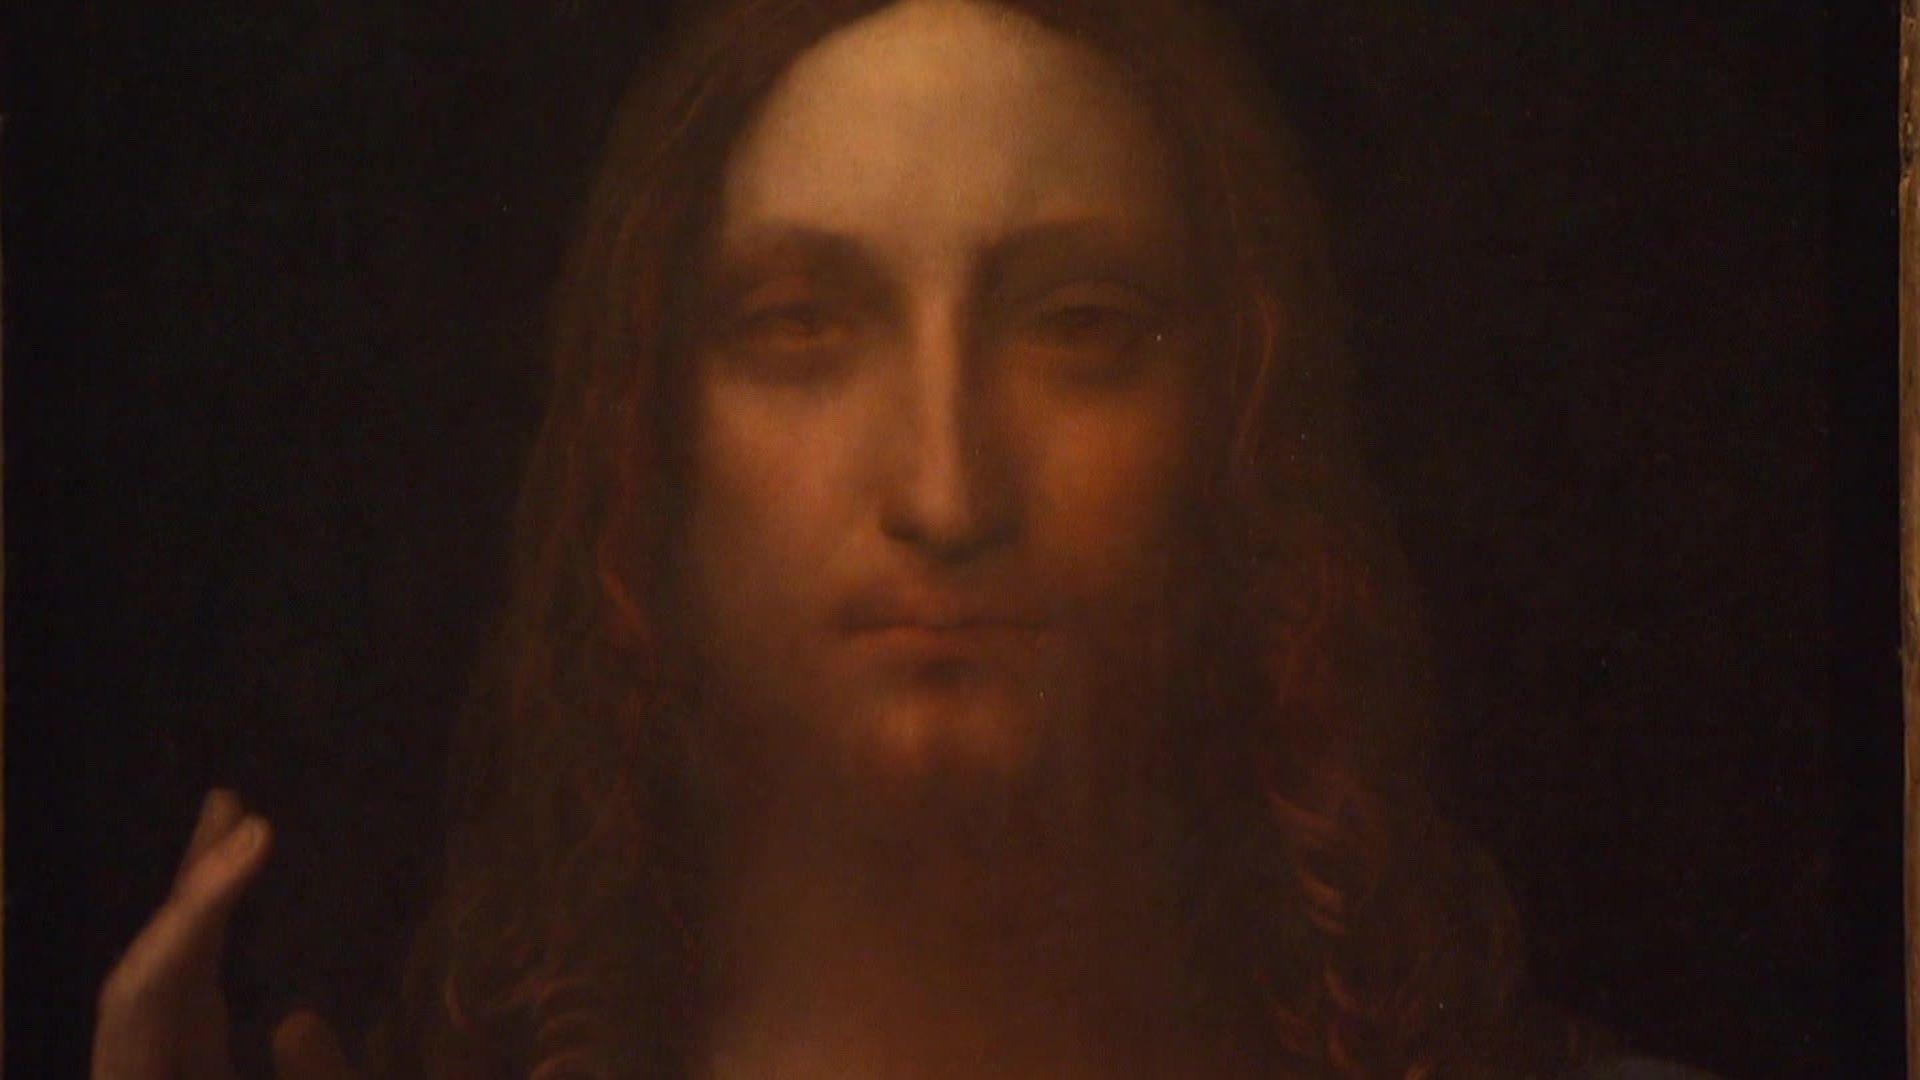 Leonardo da Vinci painting expected to fetch $100M